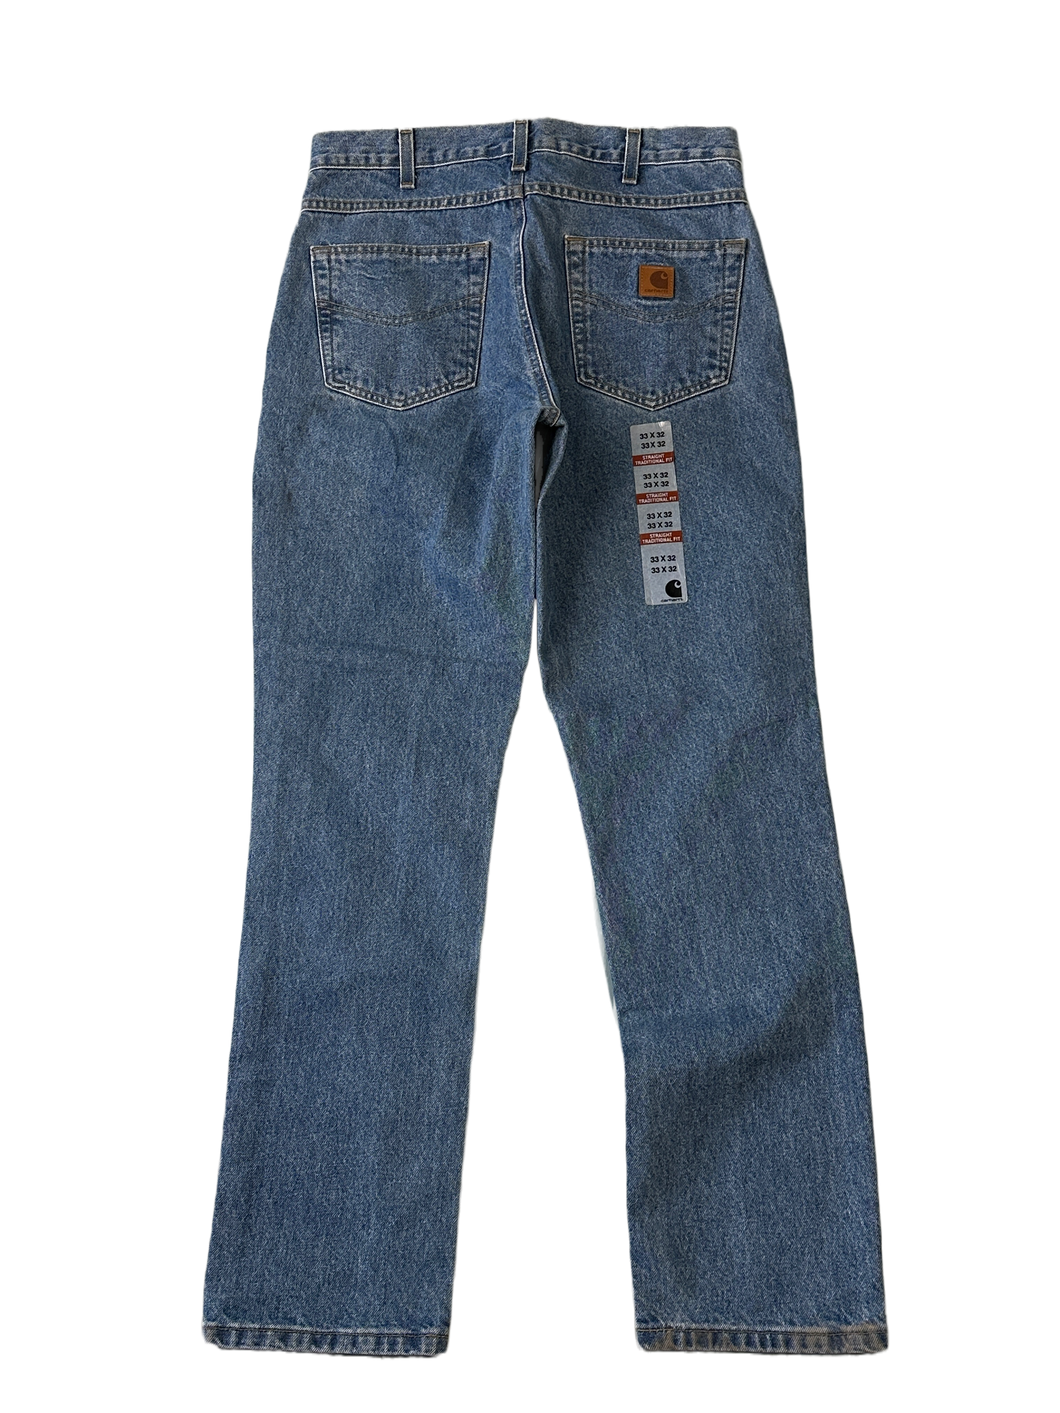 Carhartt Deadstock Jeans - 33 x 32